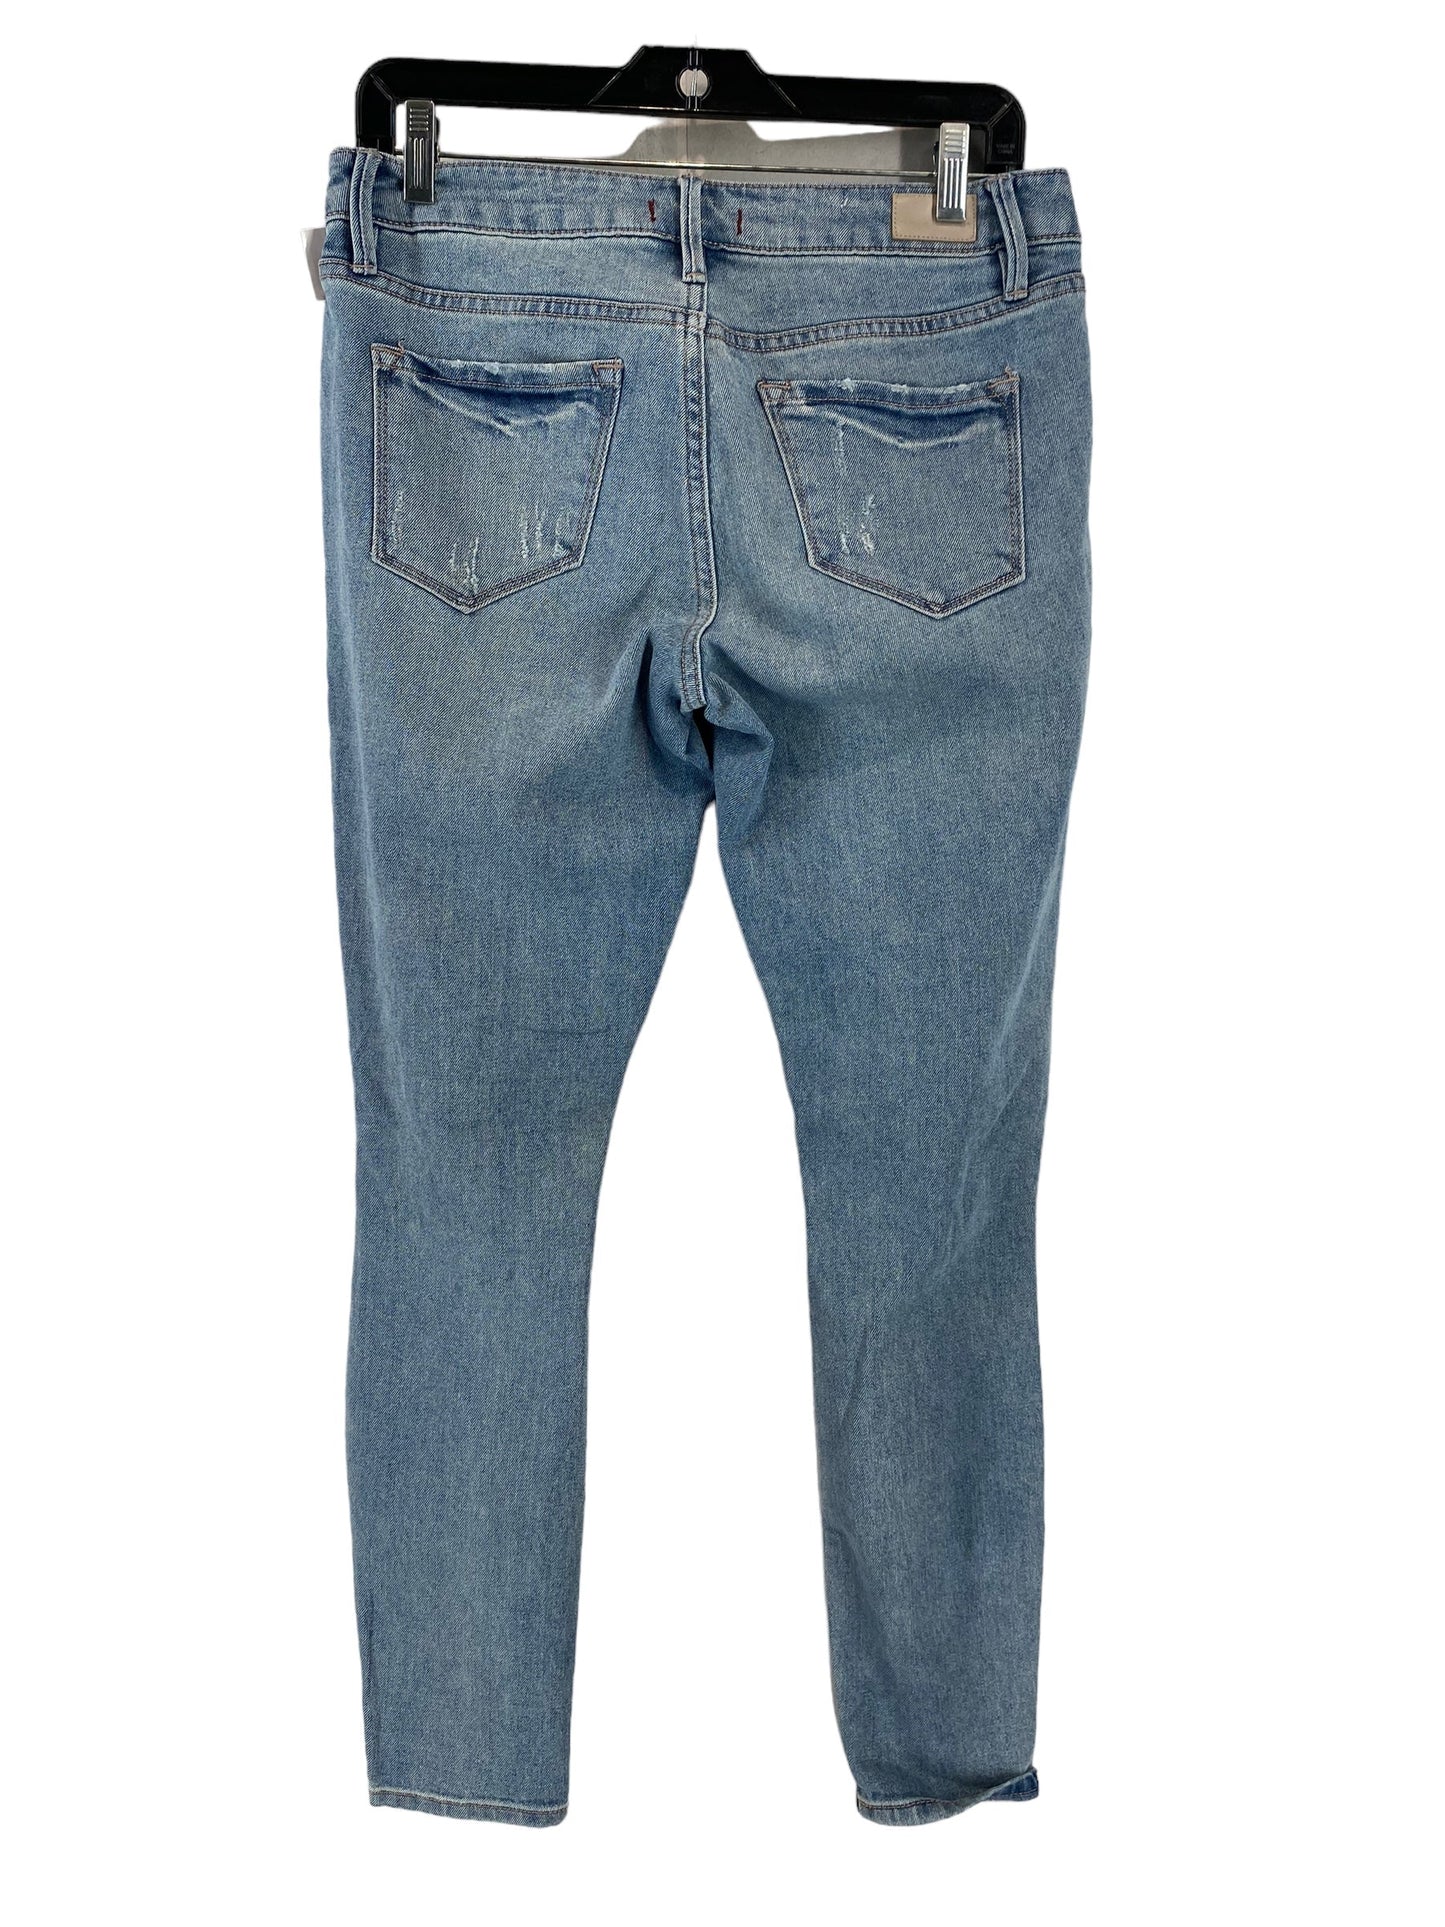 Jeans Skinny By Dear John  Size: 28